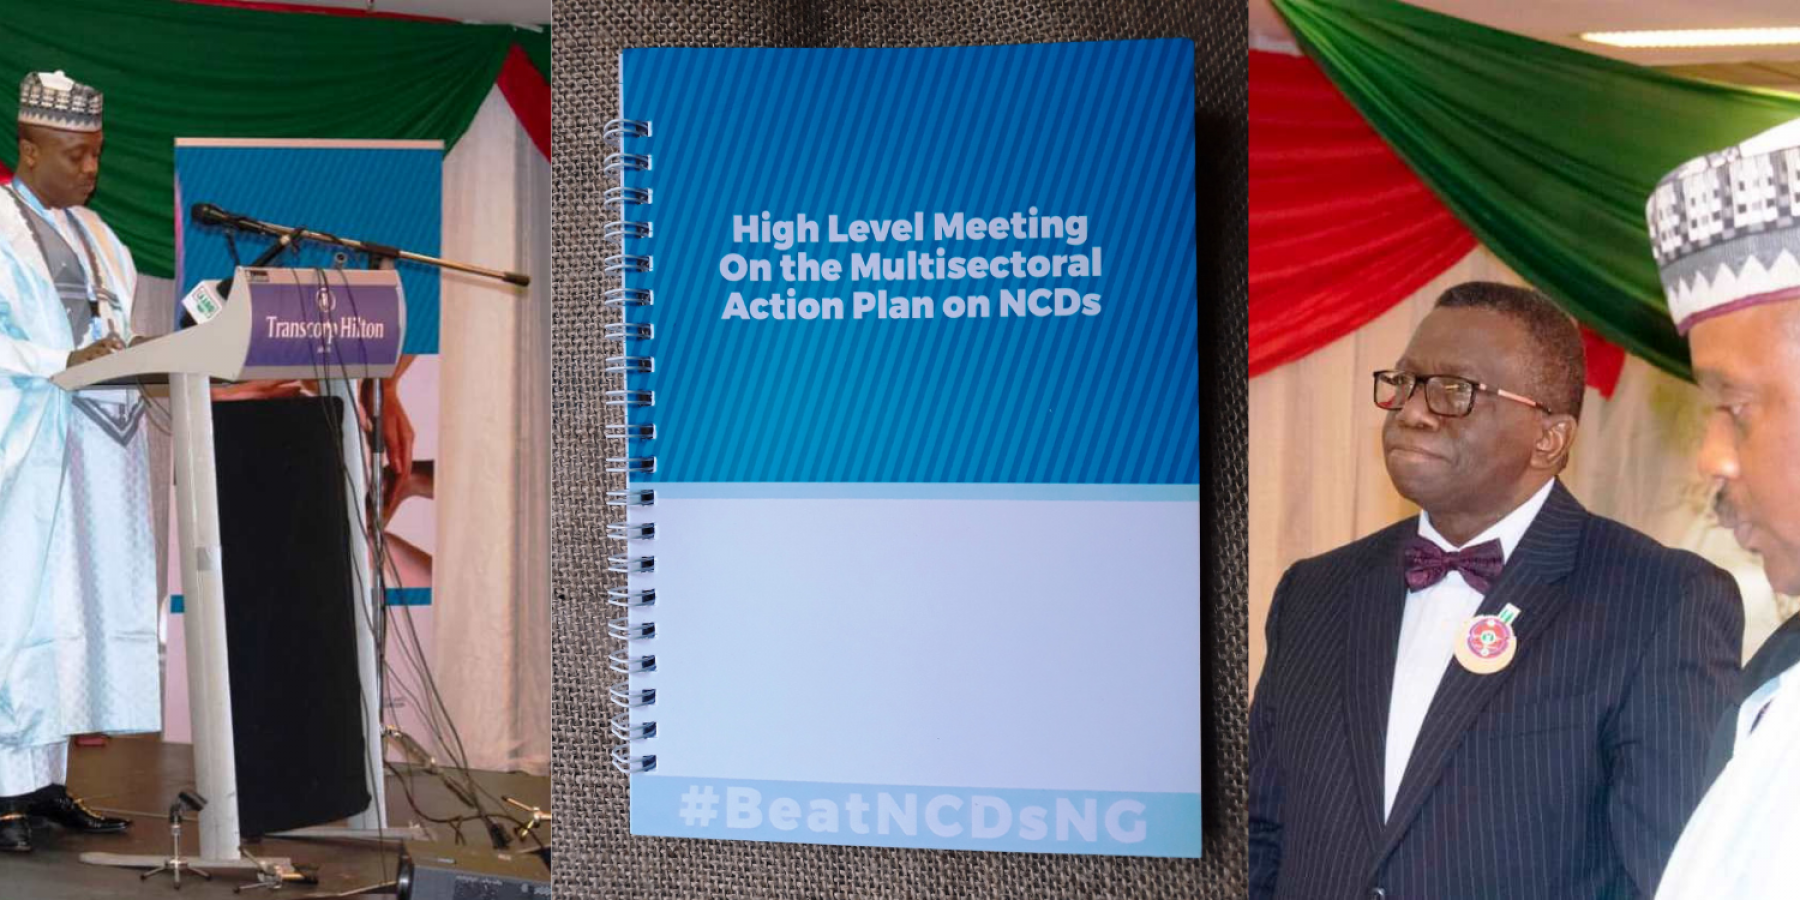 NCD Alliance Nigeria